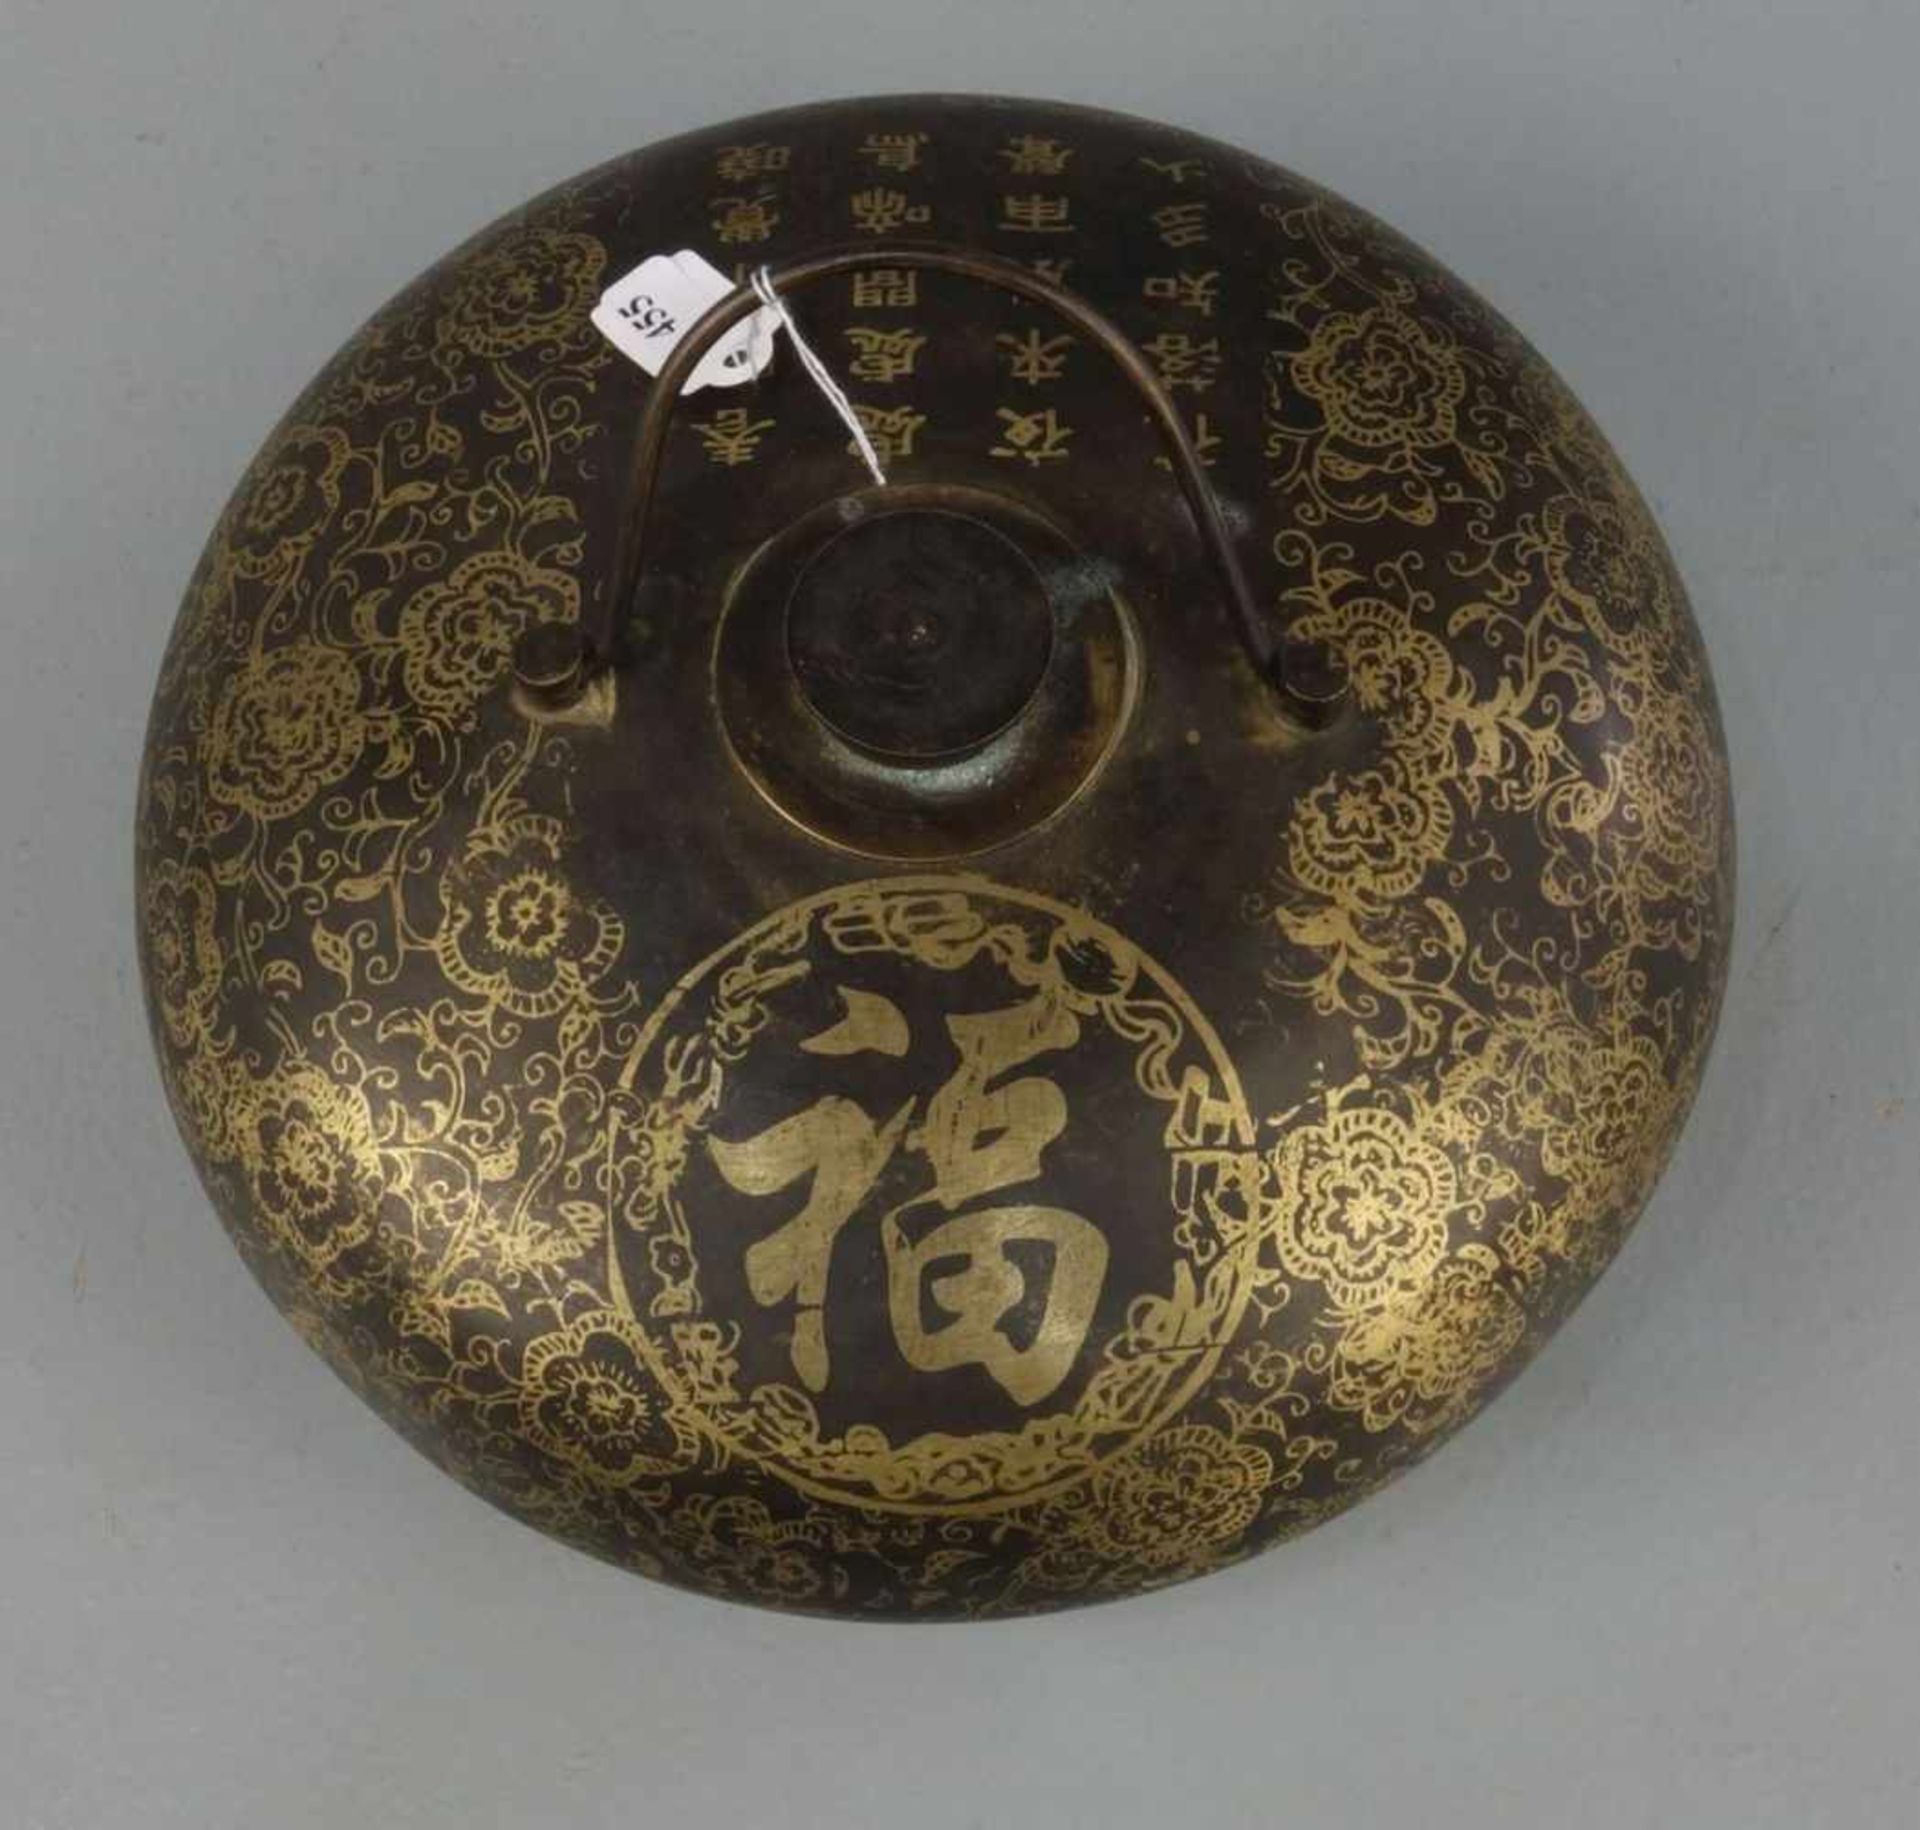 CHINESISCHE WÄRMFLASCHE / hot-water bottle, China, Anfang 20. Jh., Bronze braun patiniert und in - Image 2 of 4